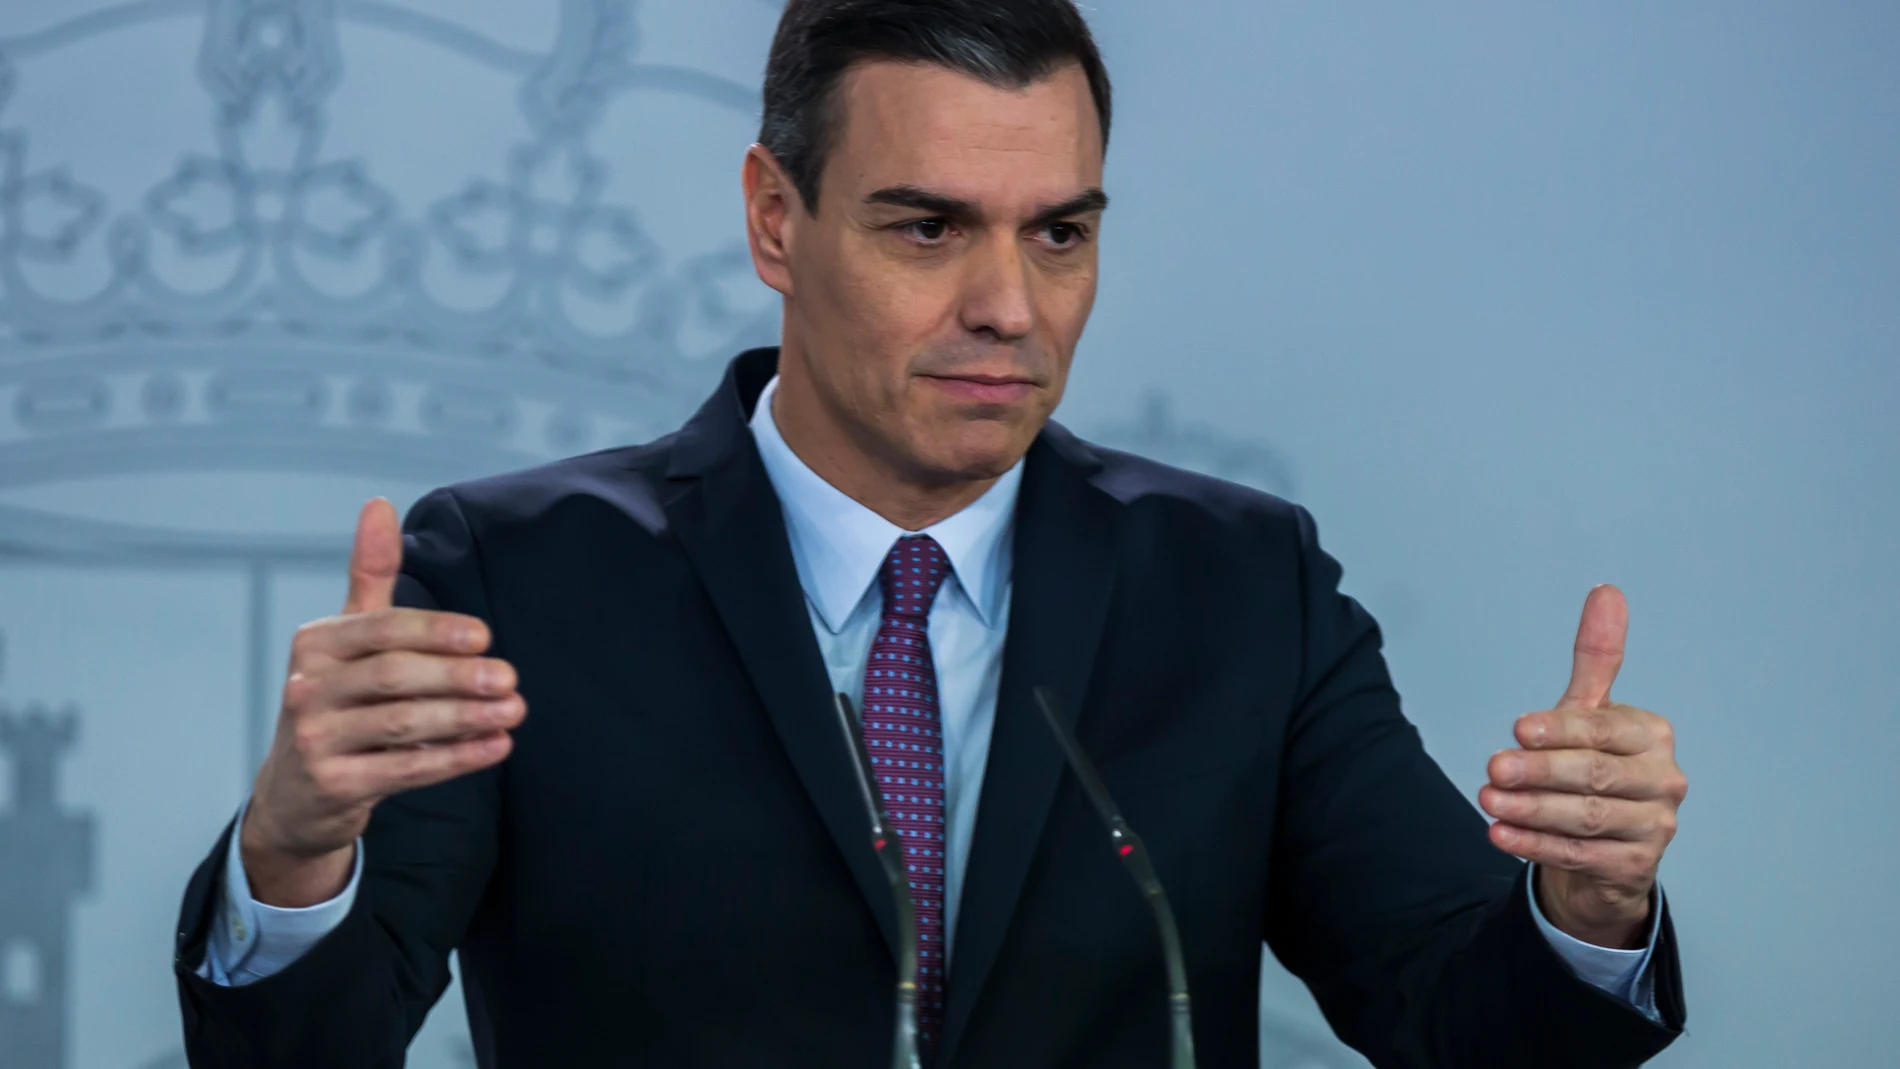 Comparecencia del Presidente del Gobierno Pedro Sanchez en rueda de prensa, despues de la reunion del Primer Consejo de Ministros